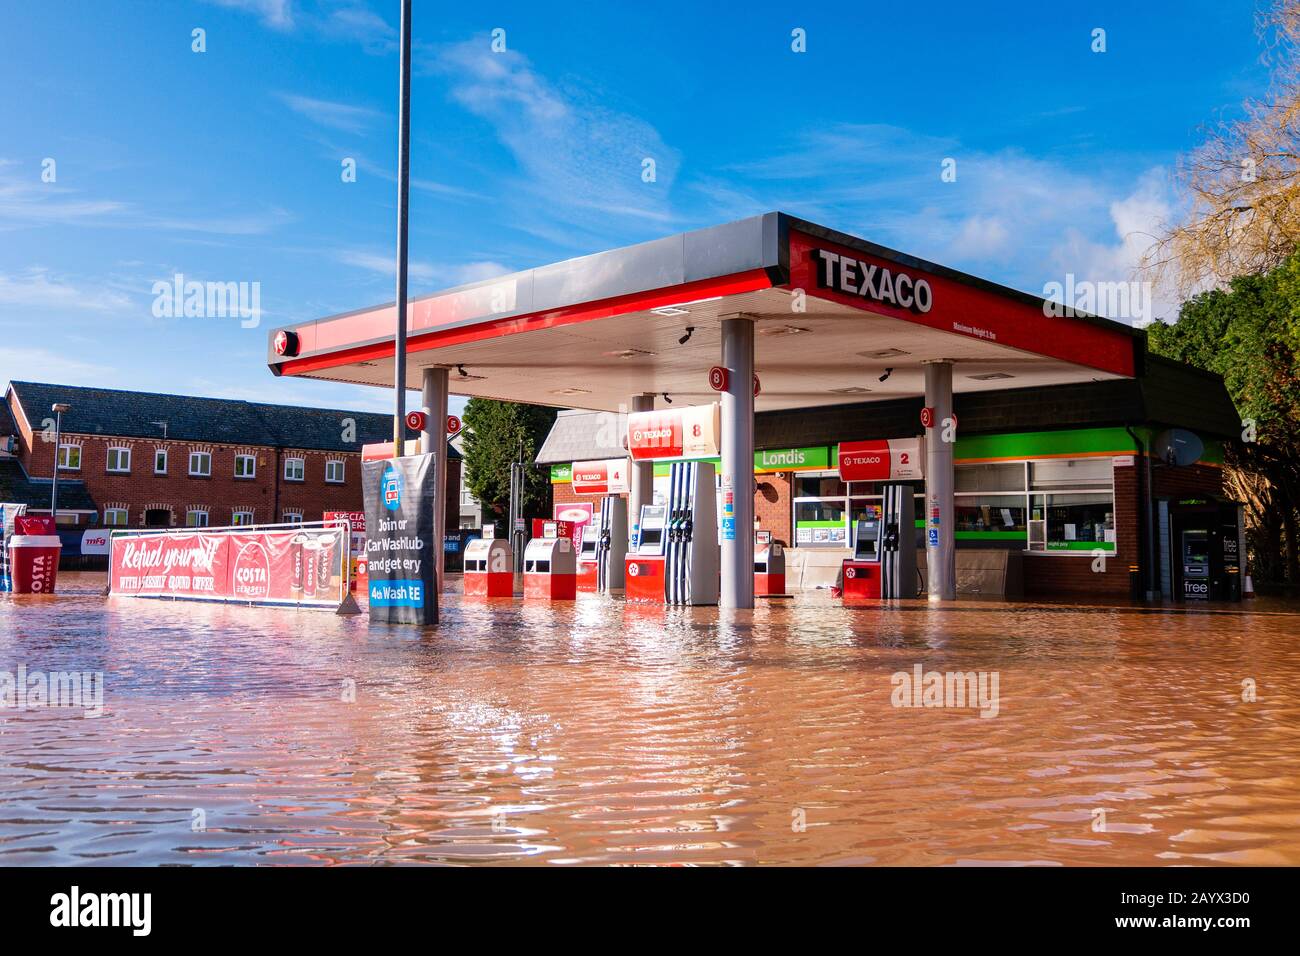 Sturm Dennis überschwemmt in Hereford, Februar 2020. Tankstellenvorplatz unter Wasser wegen extremer Witterung vollständig überschwemmt, Großbritannien. Stockfoto